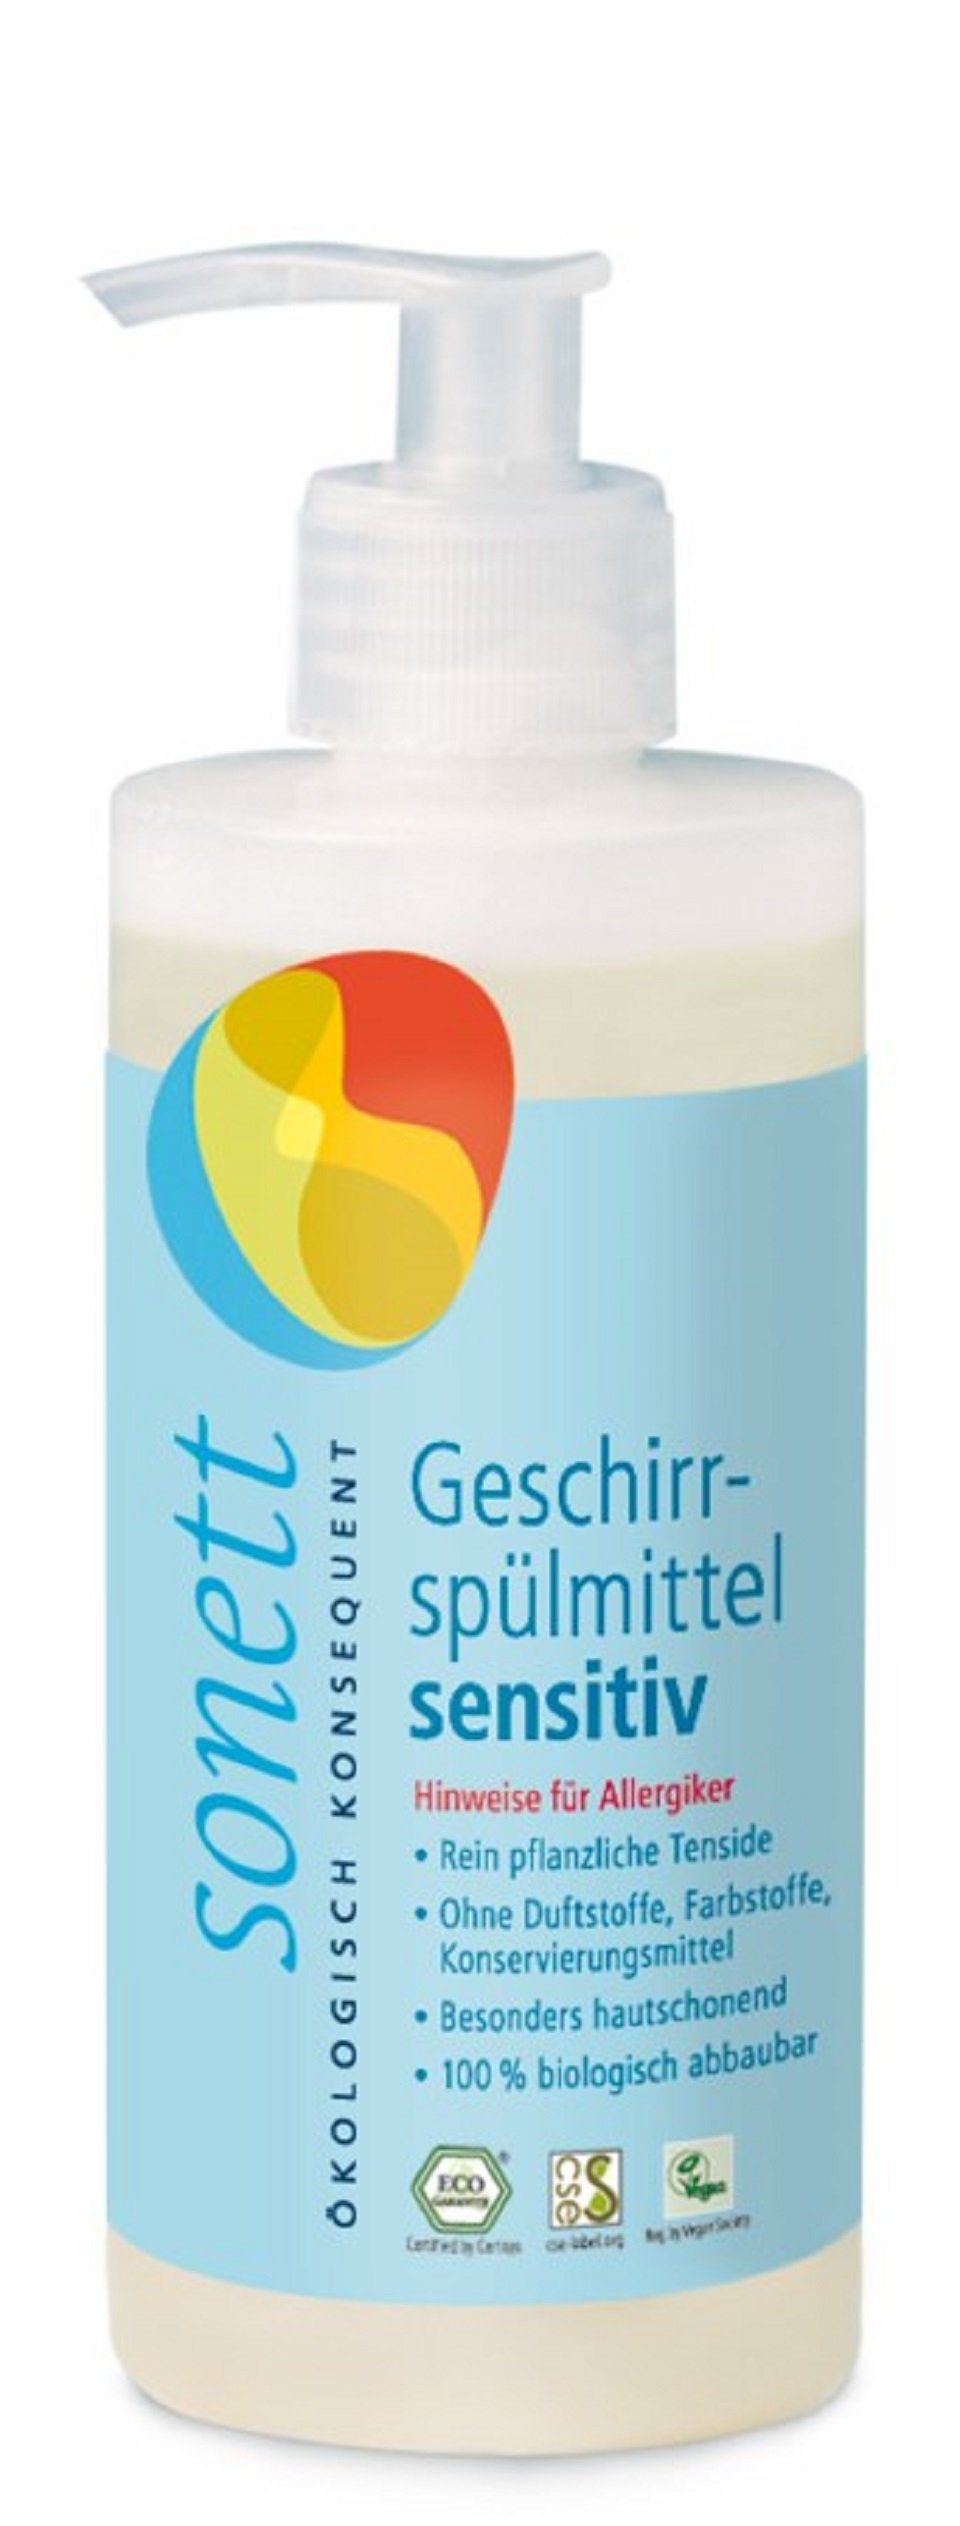 Sonett Geschirrspülmittel - Neutral/Sensitiv 300ml Geschirrspülmittel